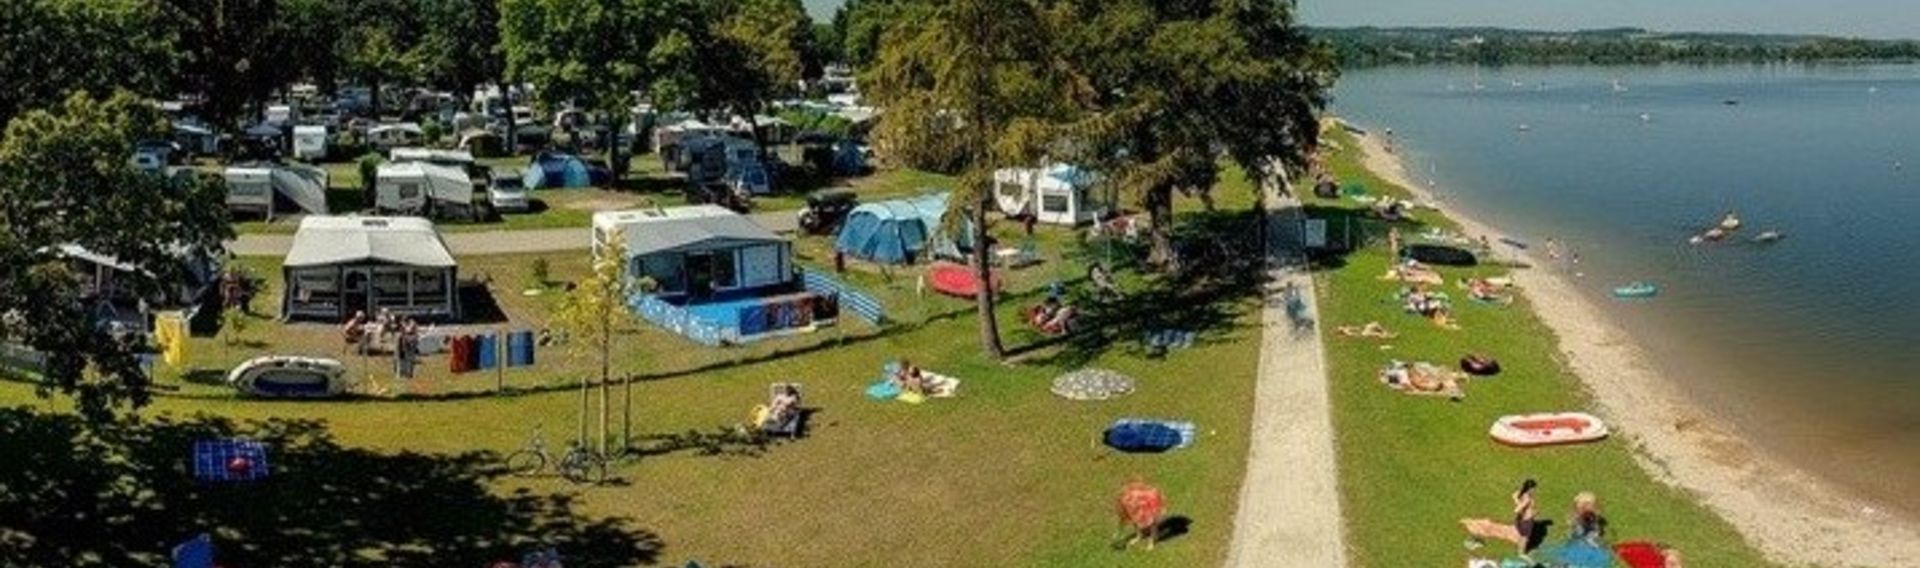 Camping Waging am See – Strandcamping